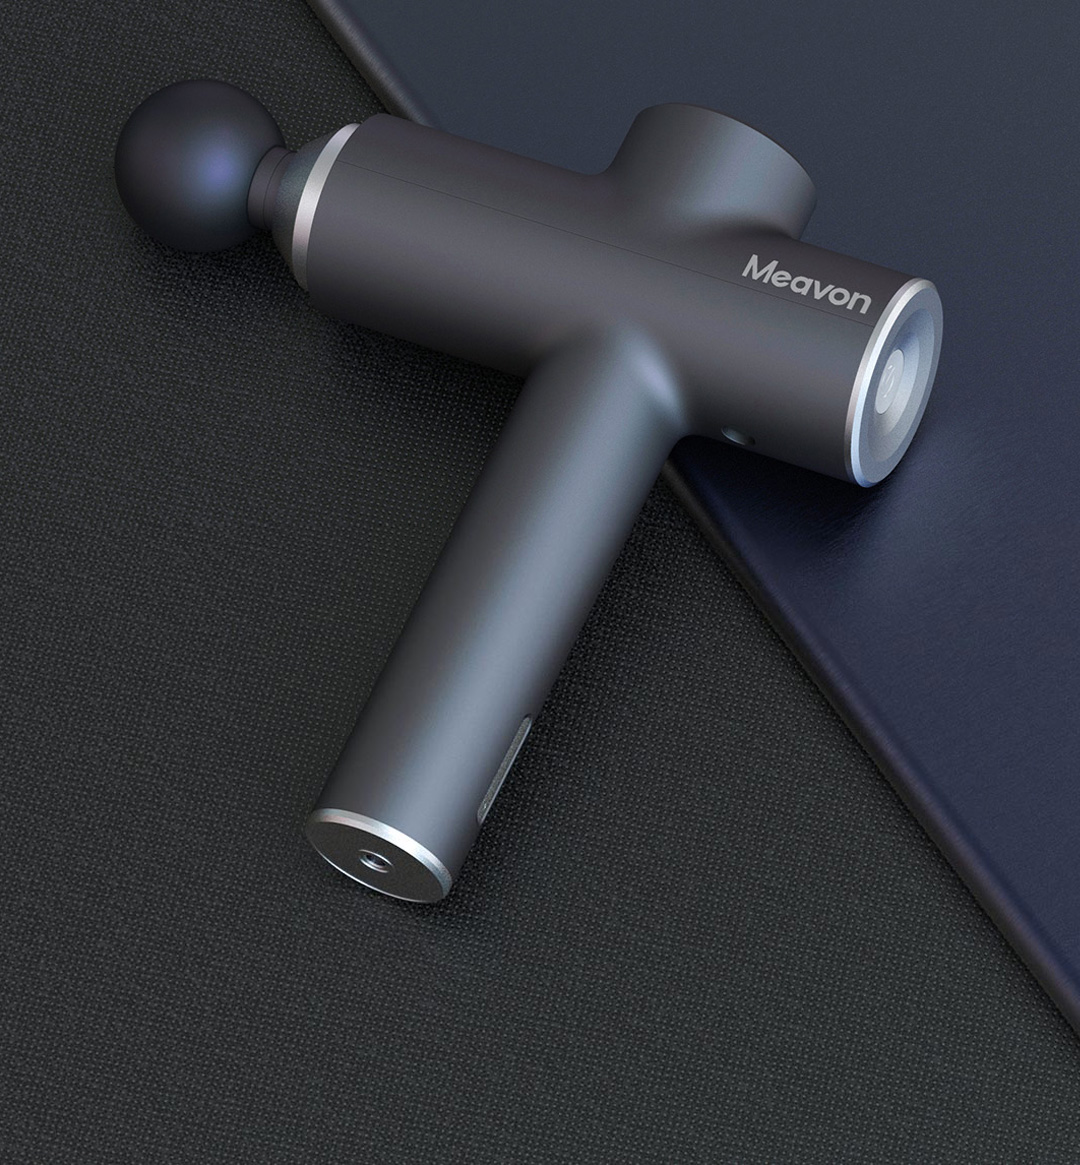 Xiaomi Meavon Portable Massage Gun